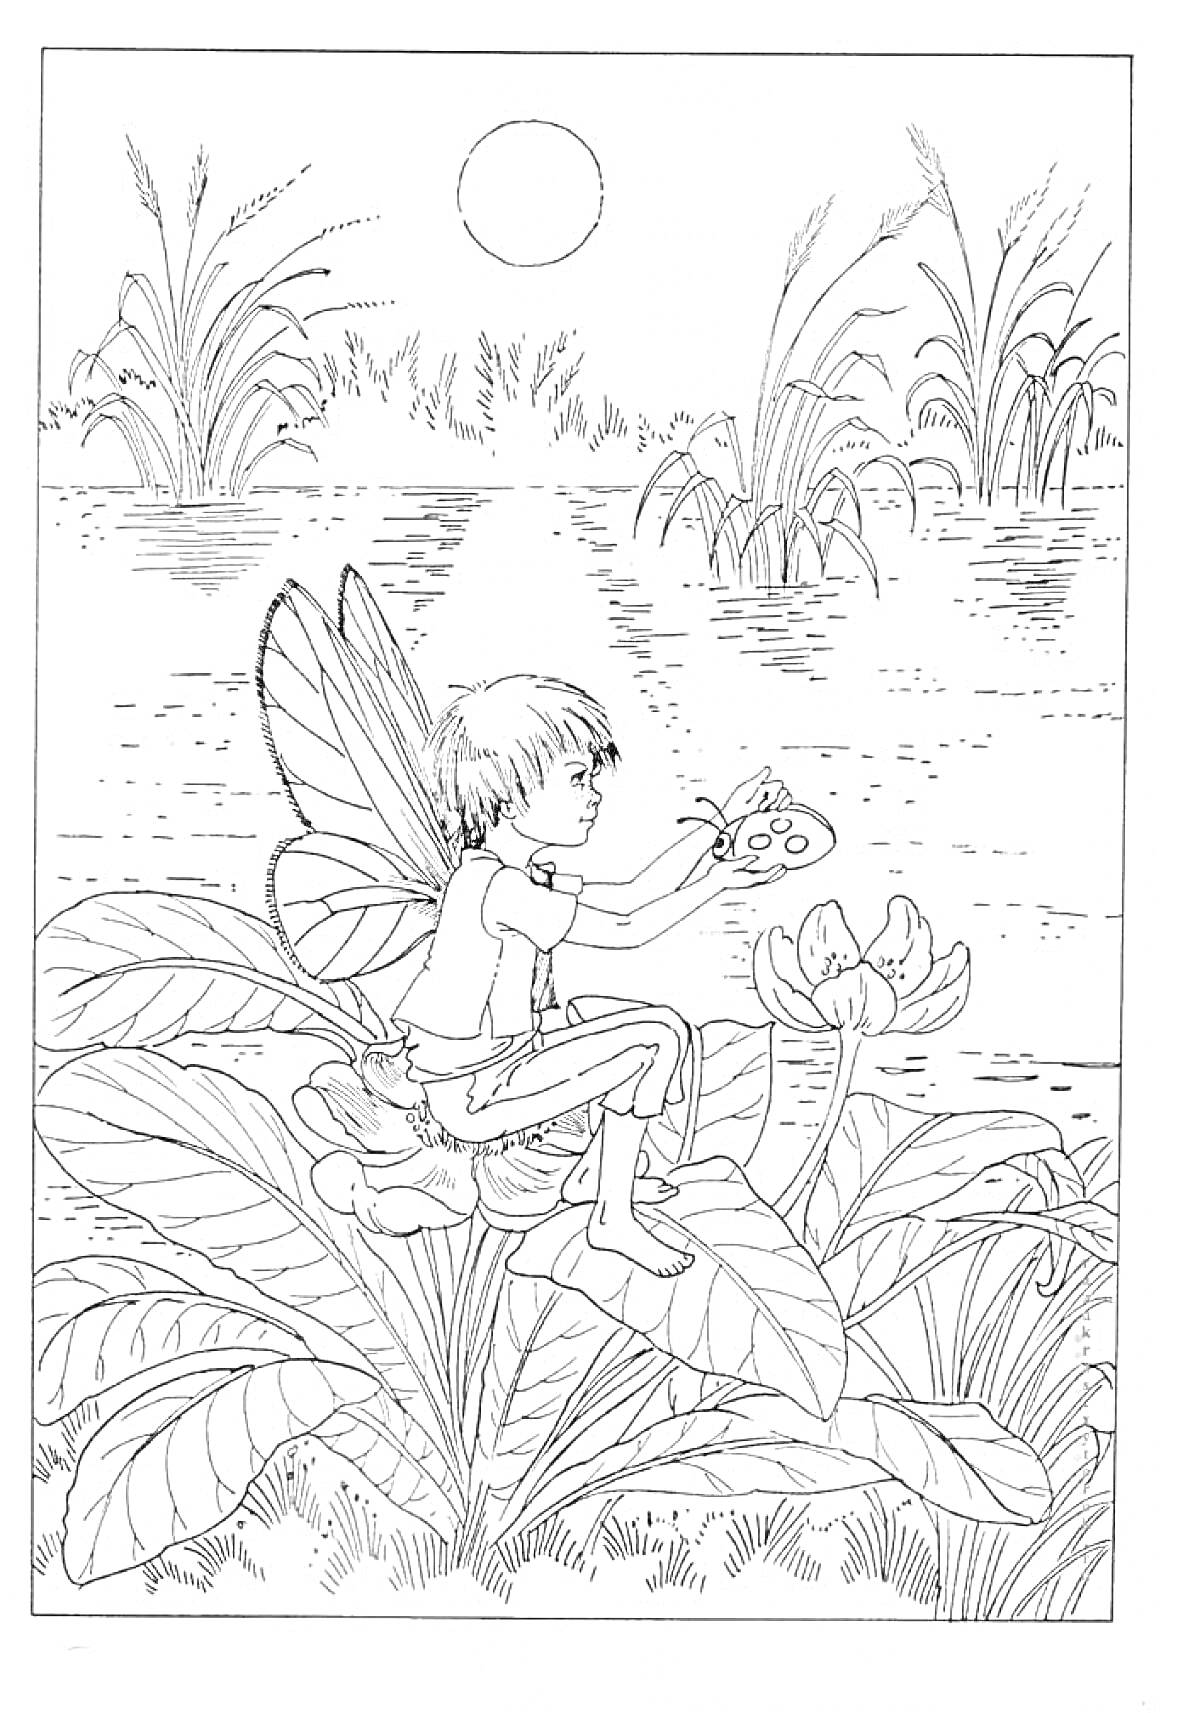 Раскраска Эльф сидит на листке лотоса у пруда с растительностью, держащий бабочку